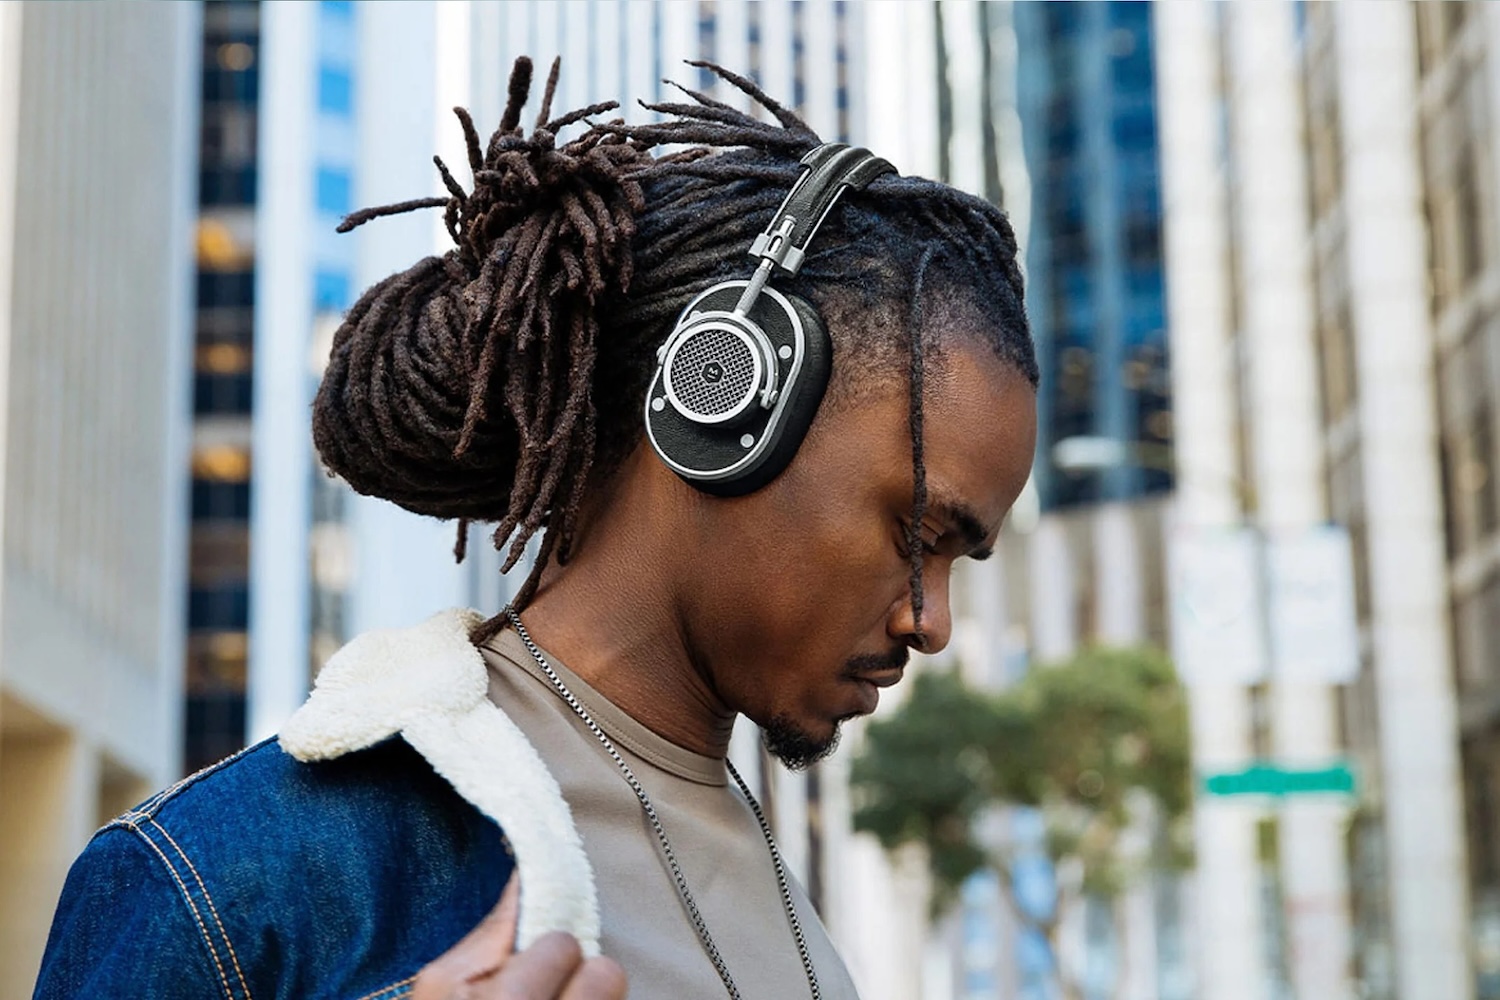 Mejores auriculares inalámbricos compatibles con iPhone